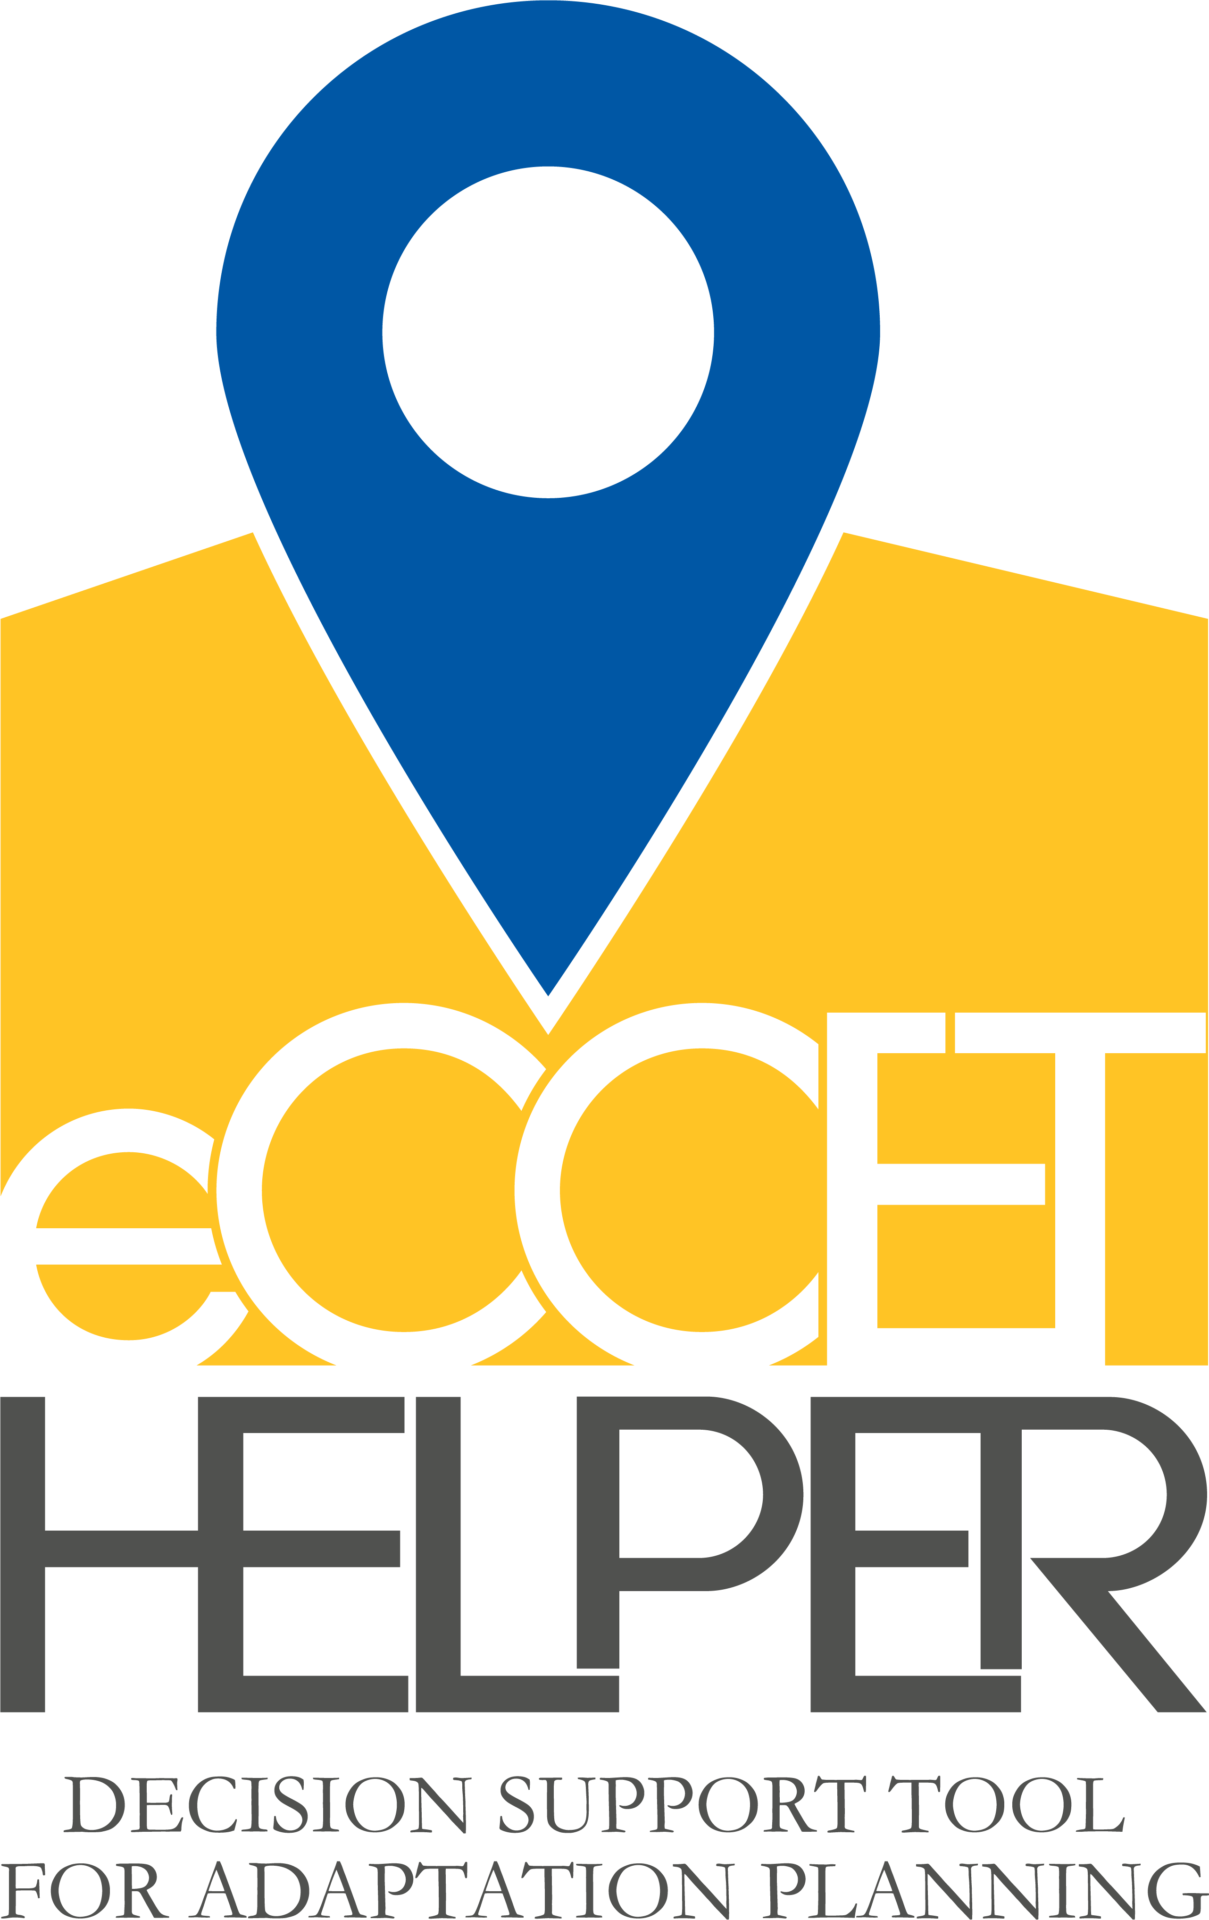 eCCET logo